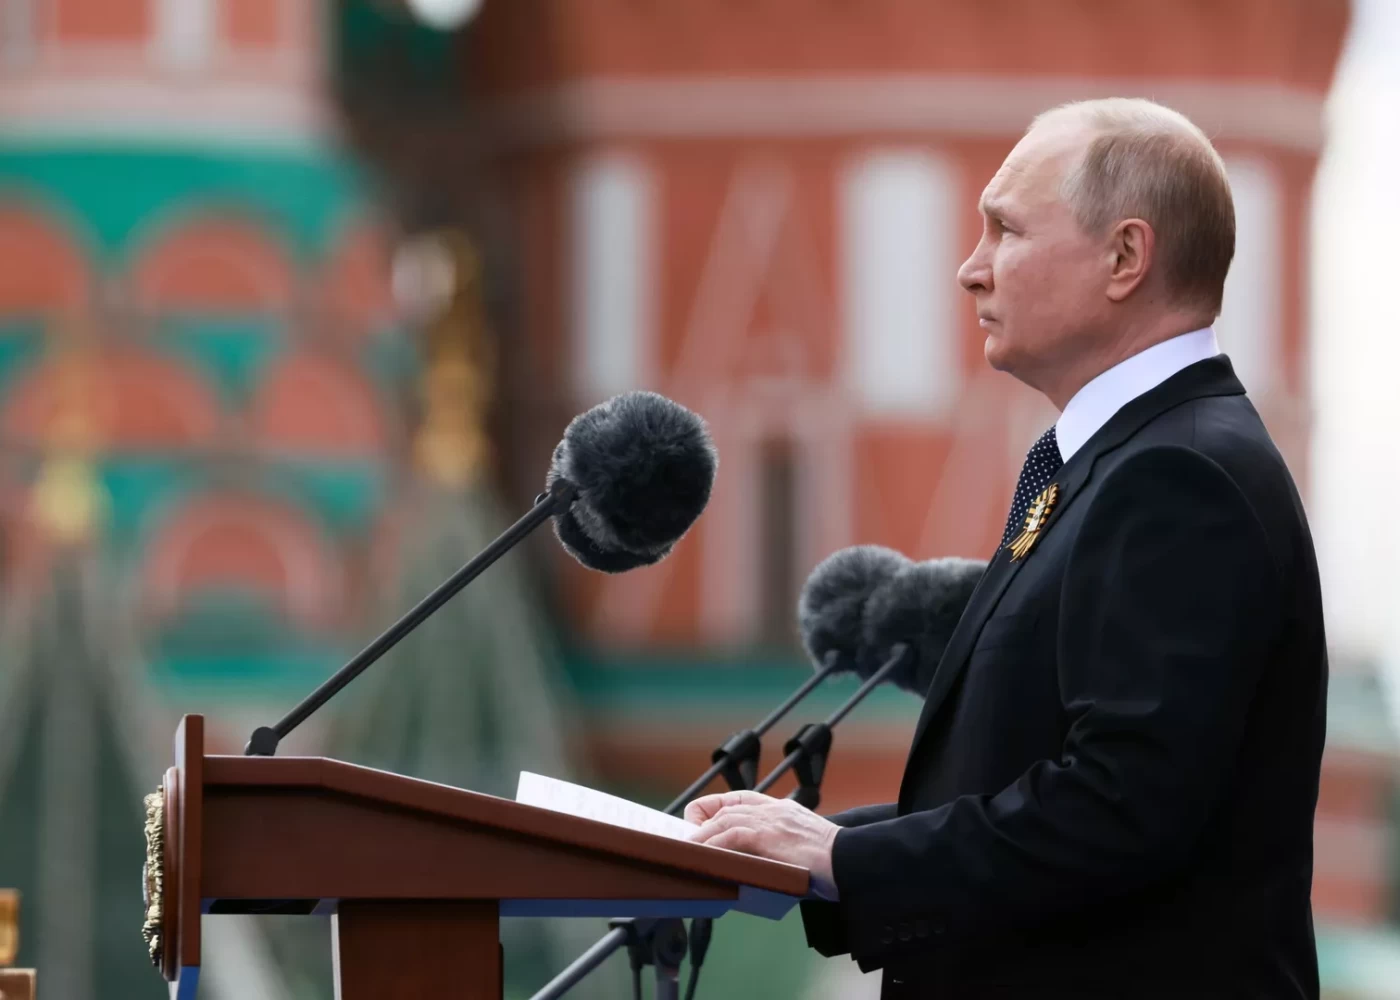 "Rusiya qlobal toqquşmanın qarşısını almaq üçün əlindən gələni edəcək" -Putin